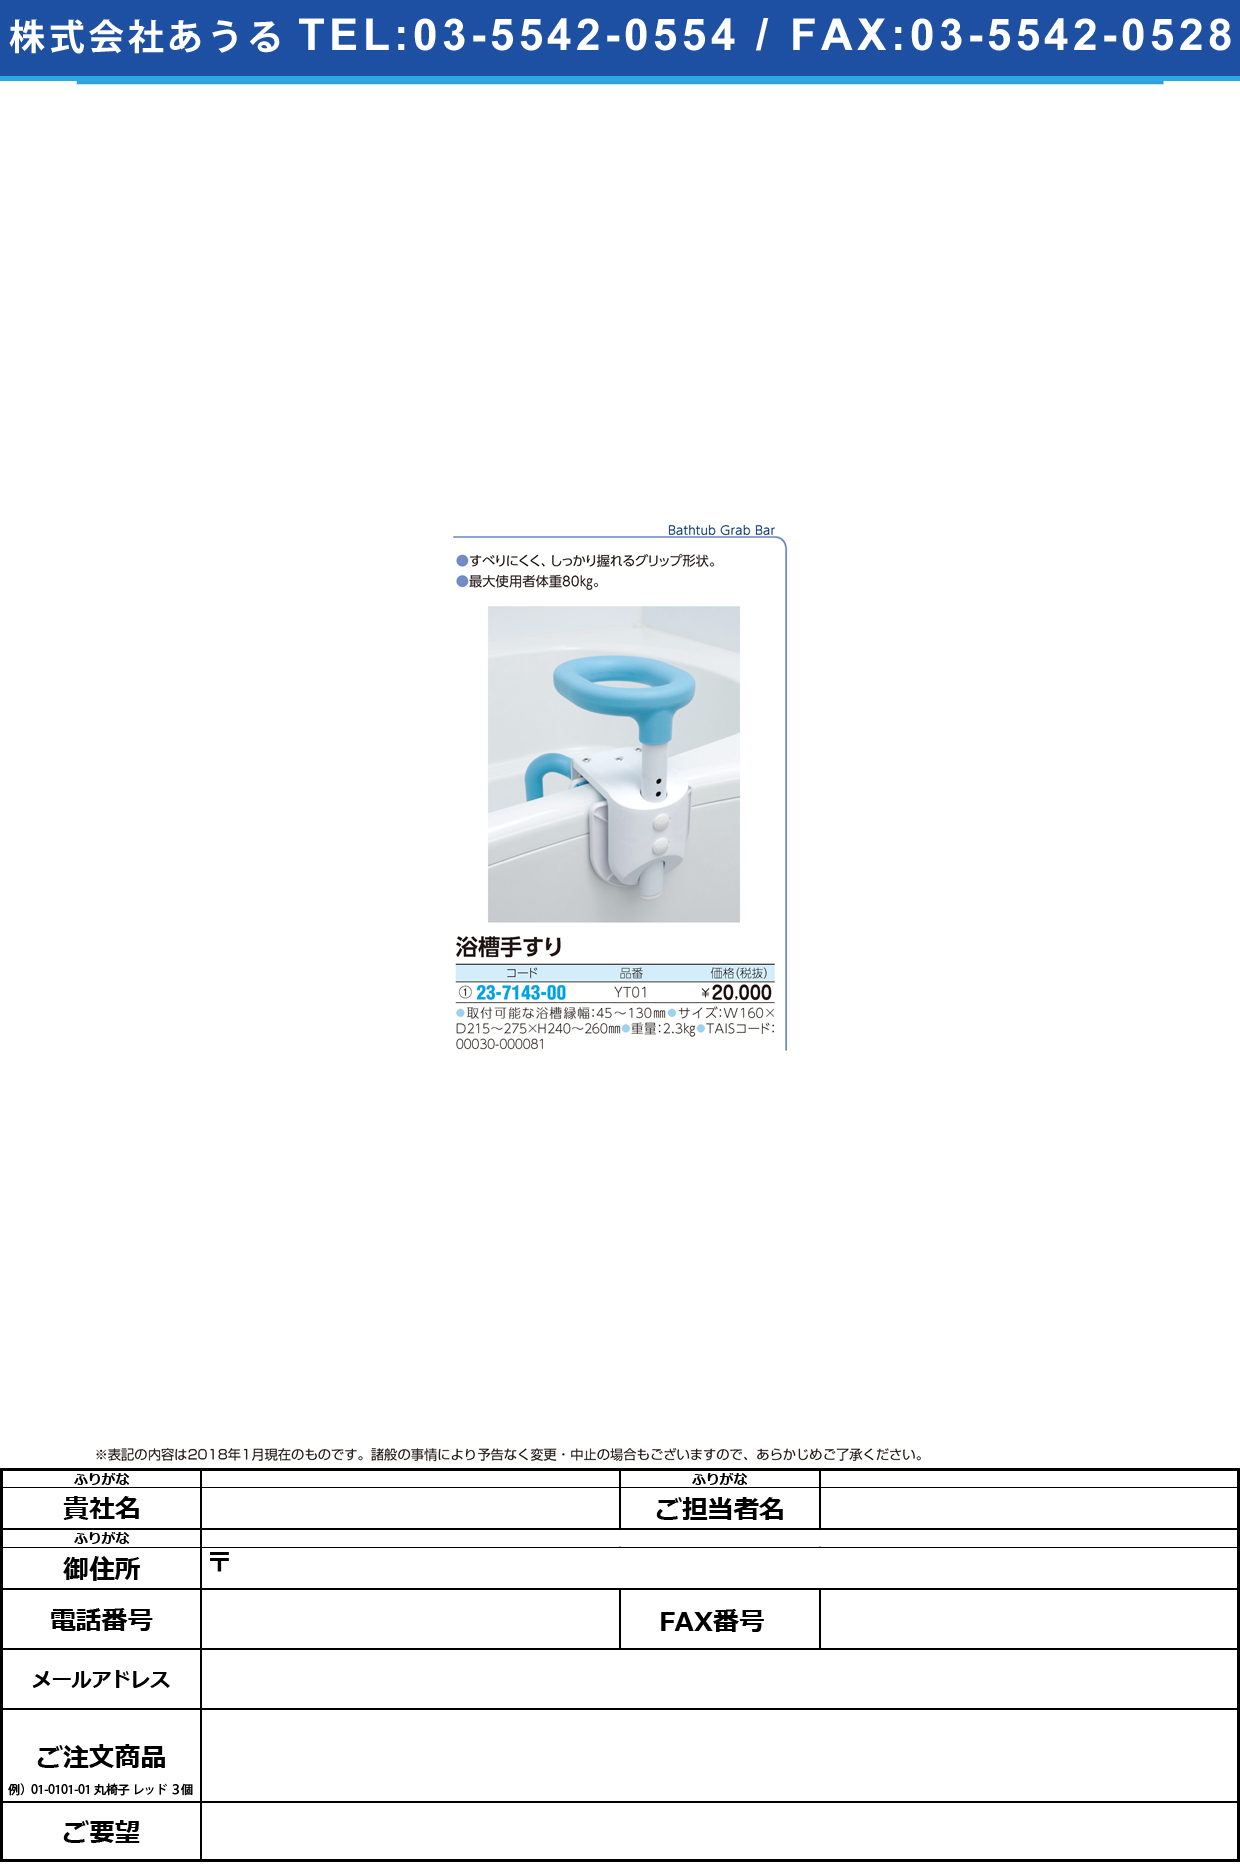 (23-7143-00)コンパクト浴槽手すり YT01 ｺﾝﾊﾟｸﾄﾖｸｿｳﾃｽﾘ【1台単位】【2018年カタログ商品】